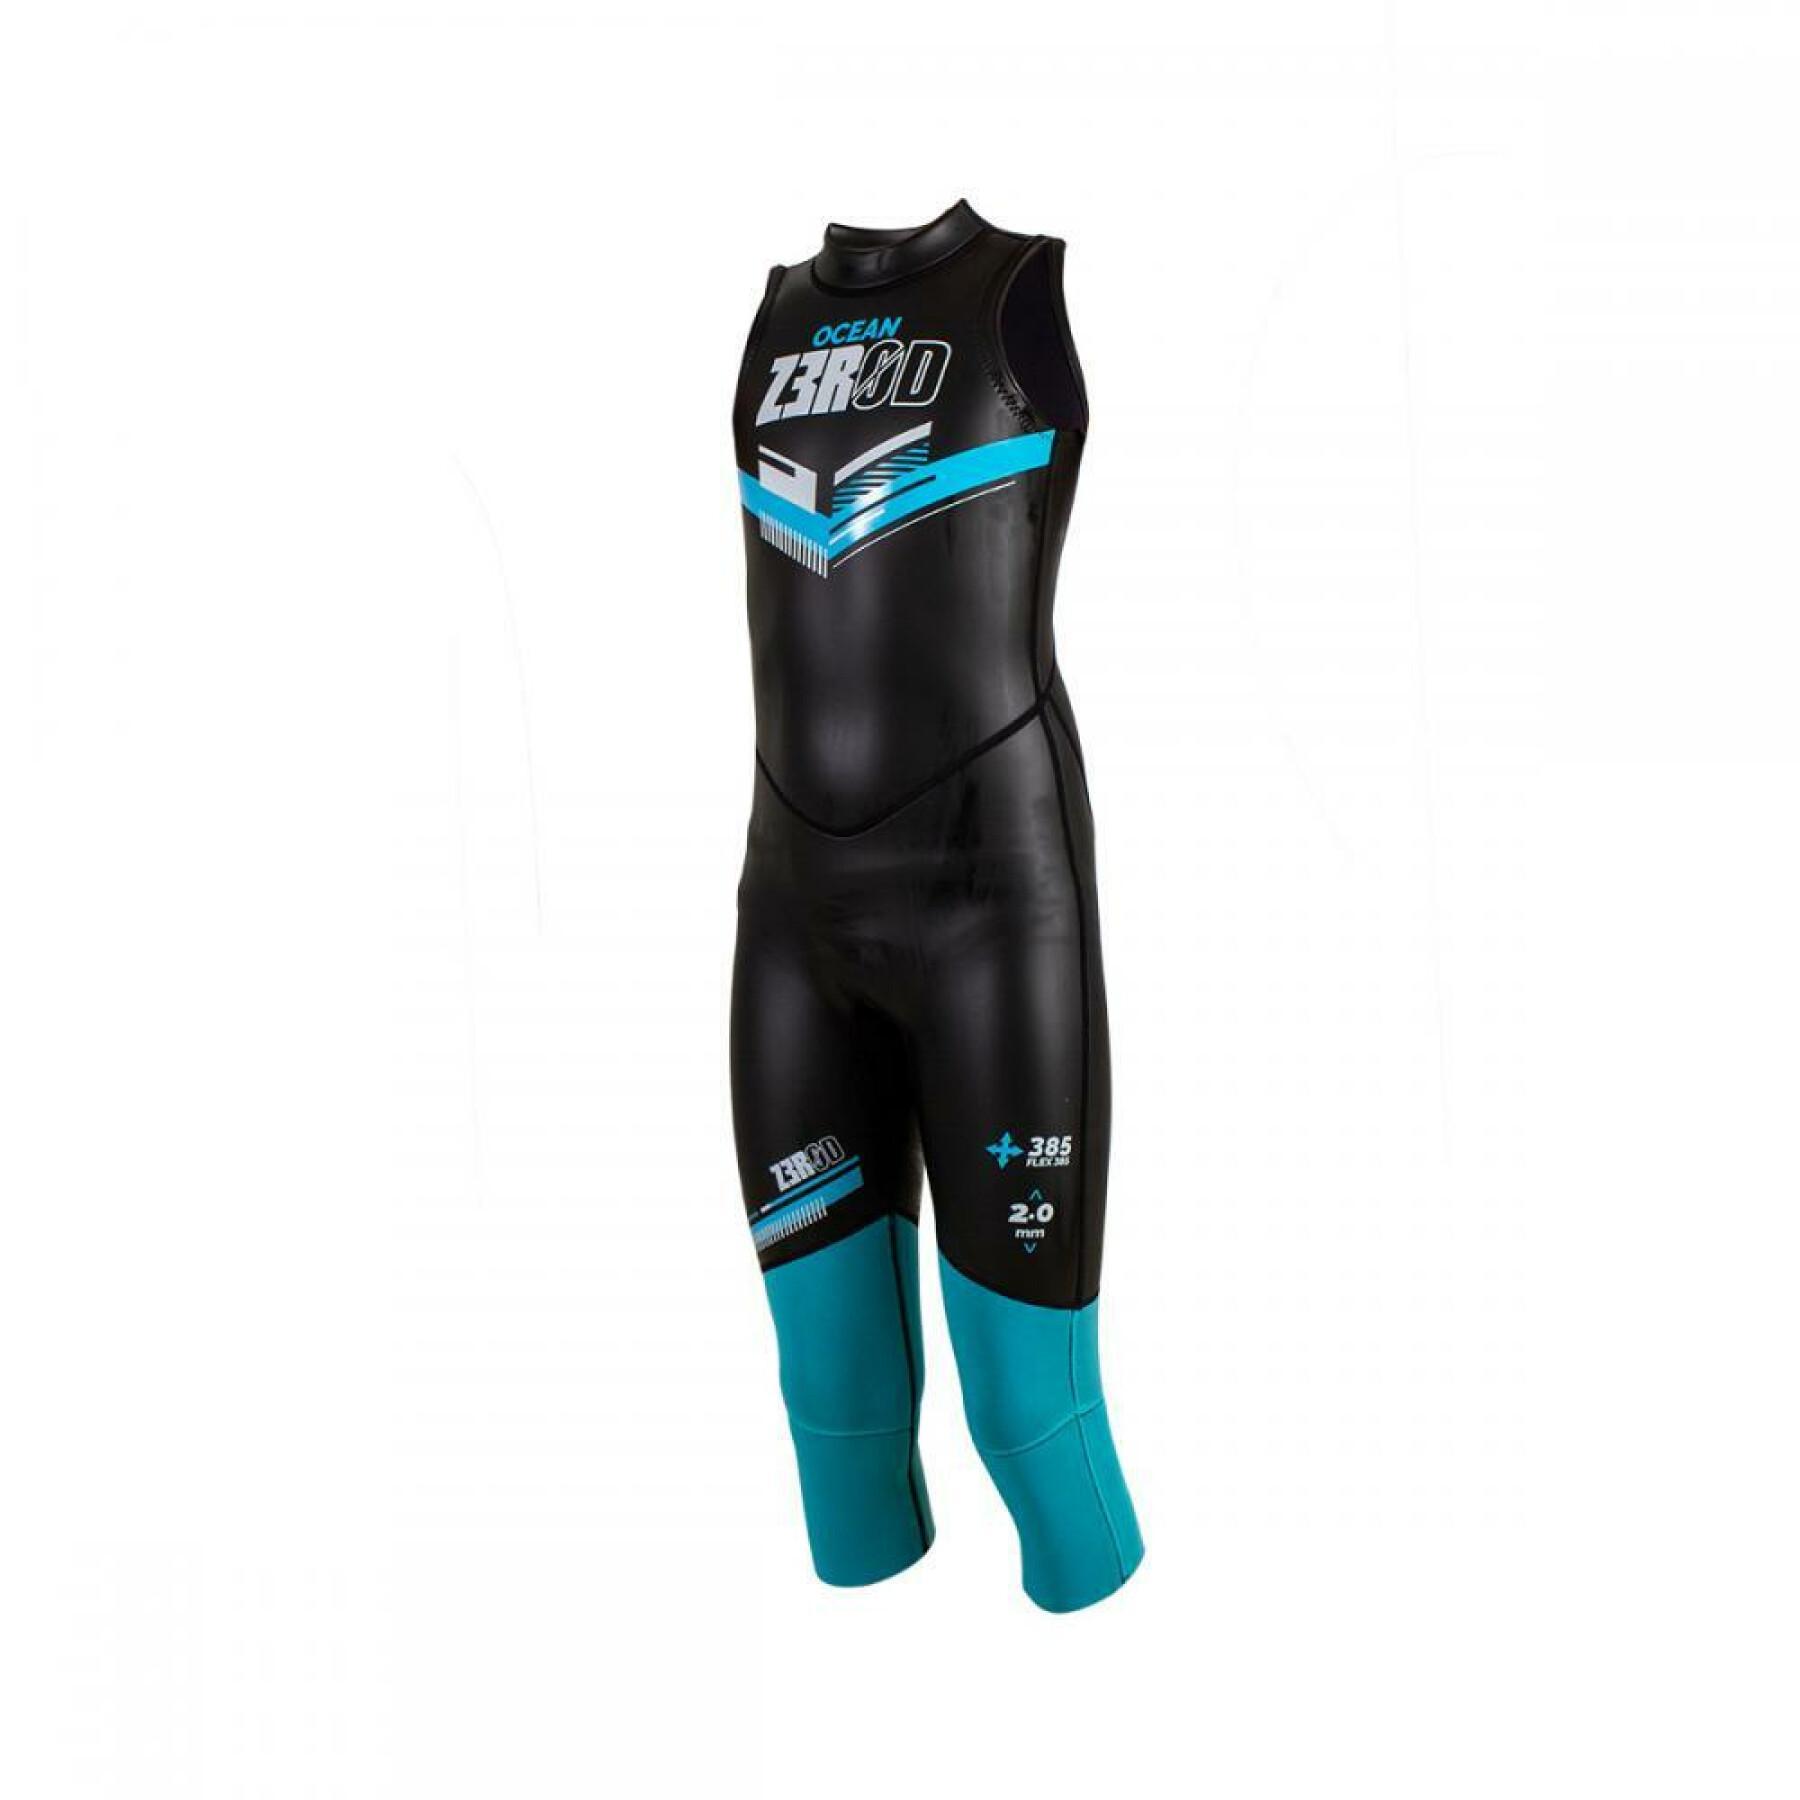 Neoprene wetsuit for children Z3R0D Ocean